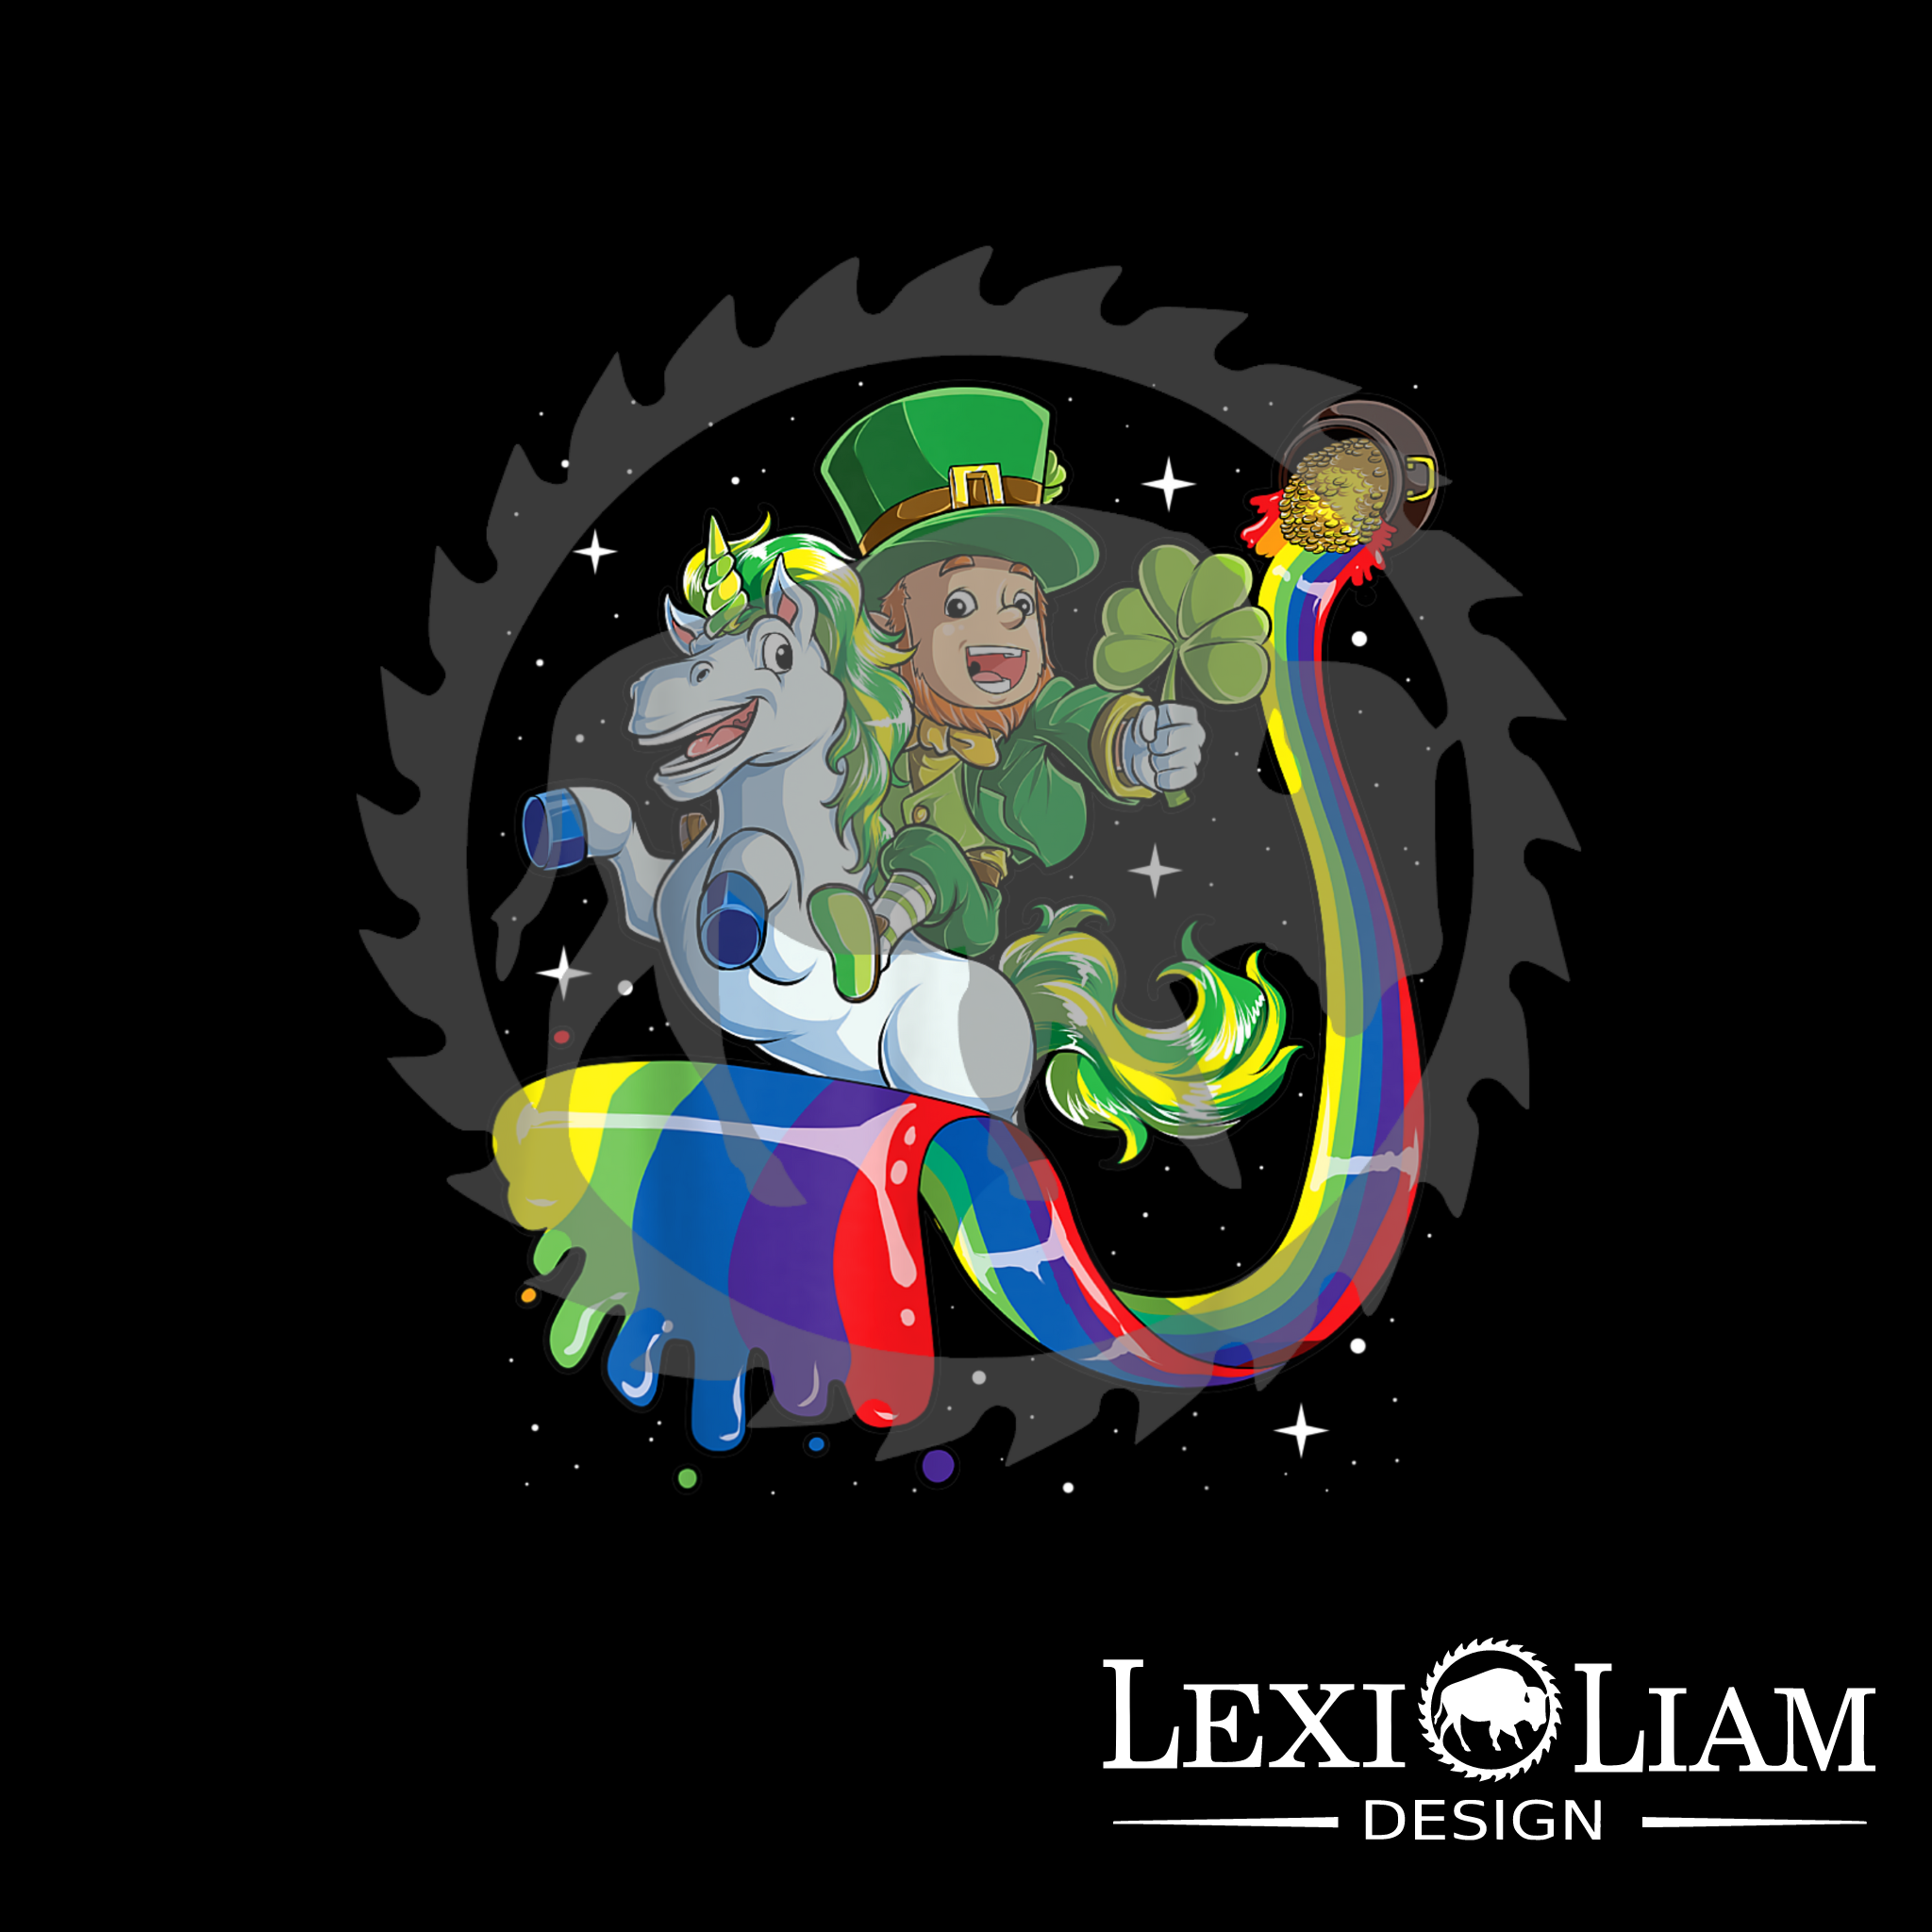 Lexi-Liam Design